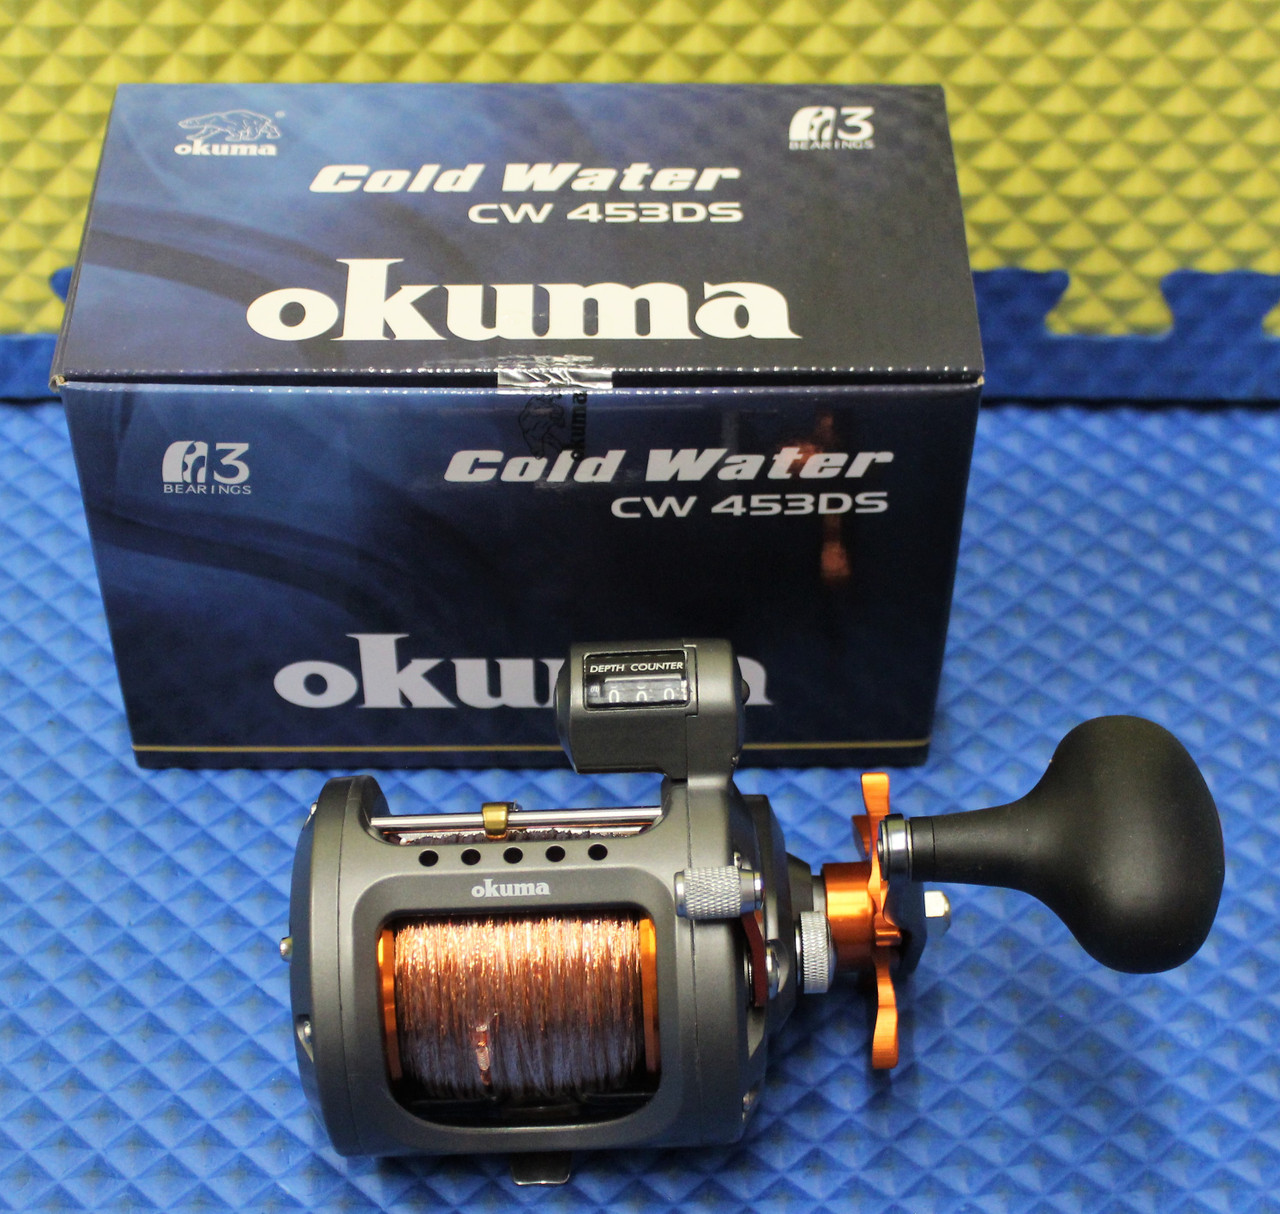 Head over to okumafishingpartsusa.com for all of your Okuma reel